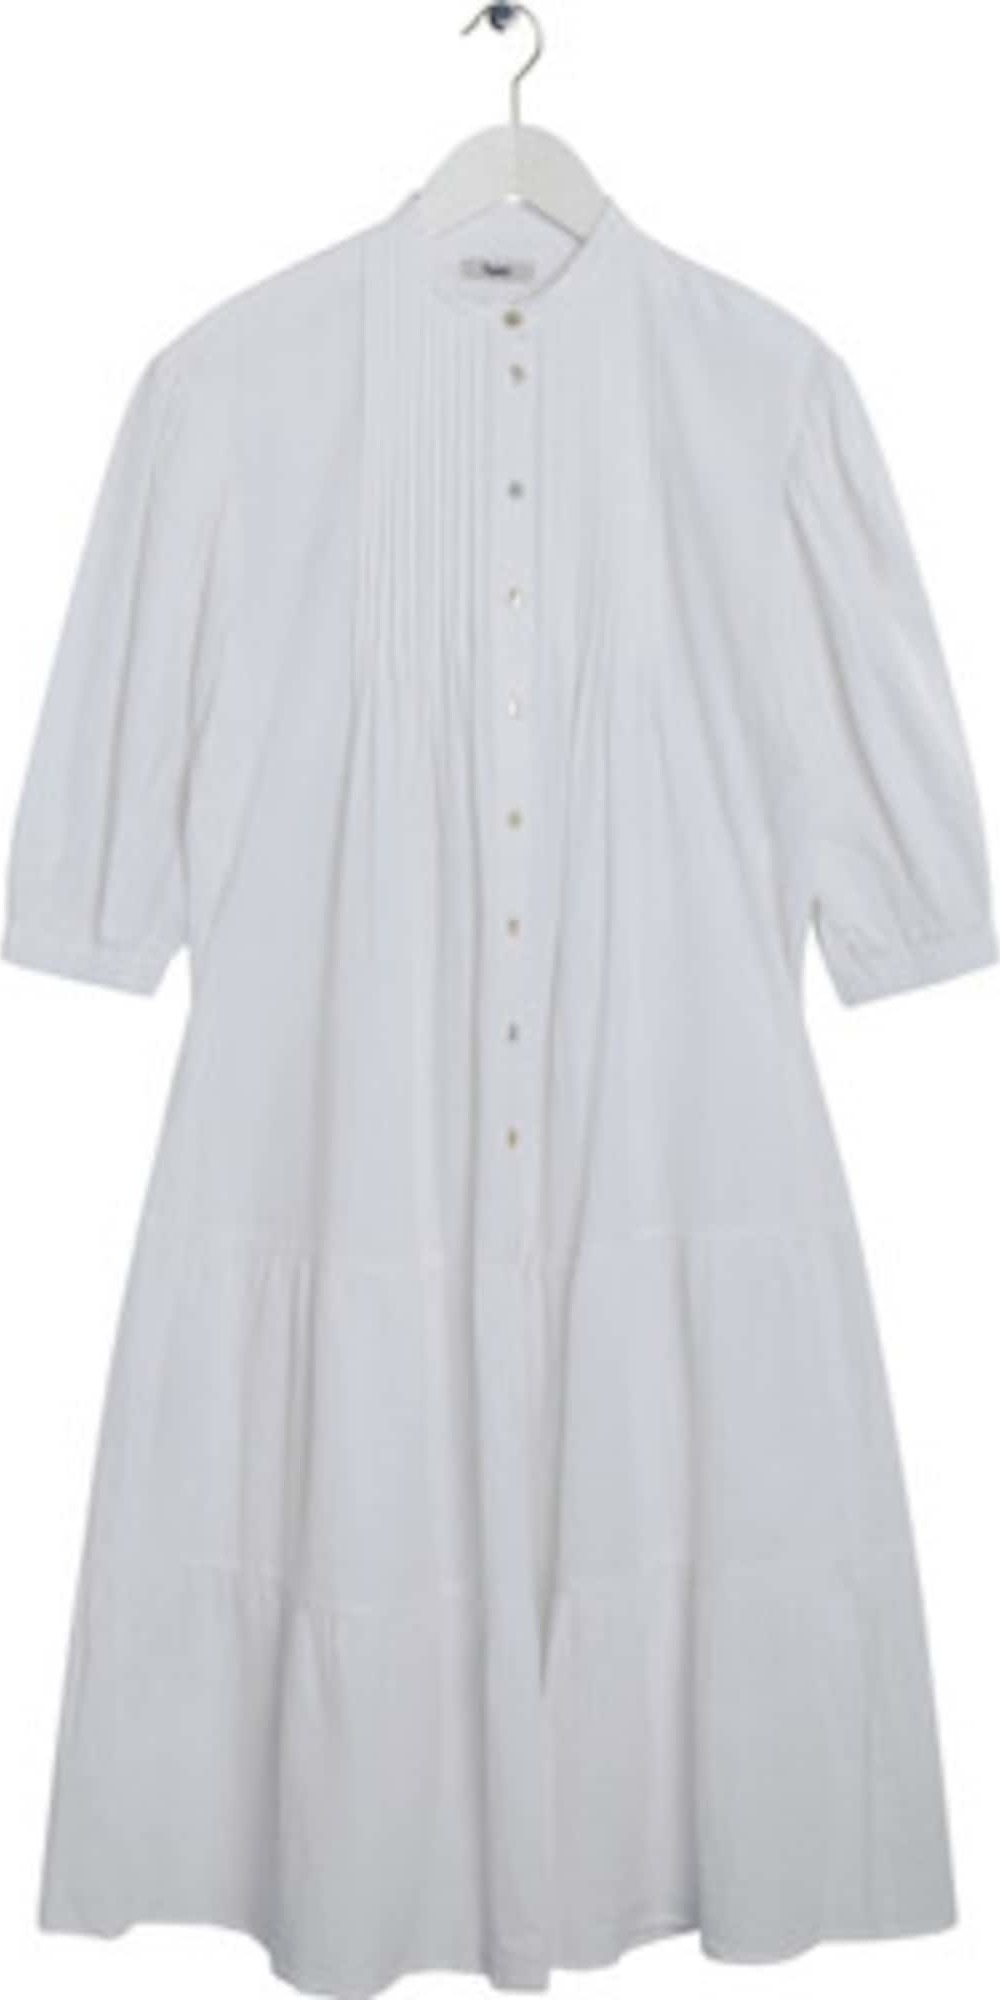 BZR Košilové šaty 'Suzy' bílá